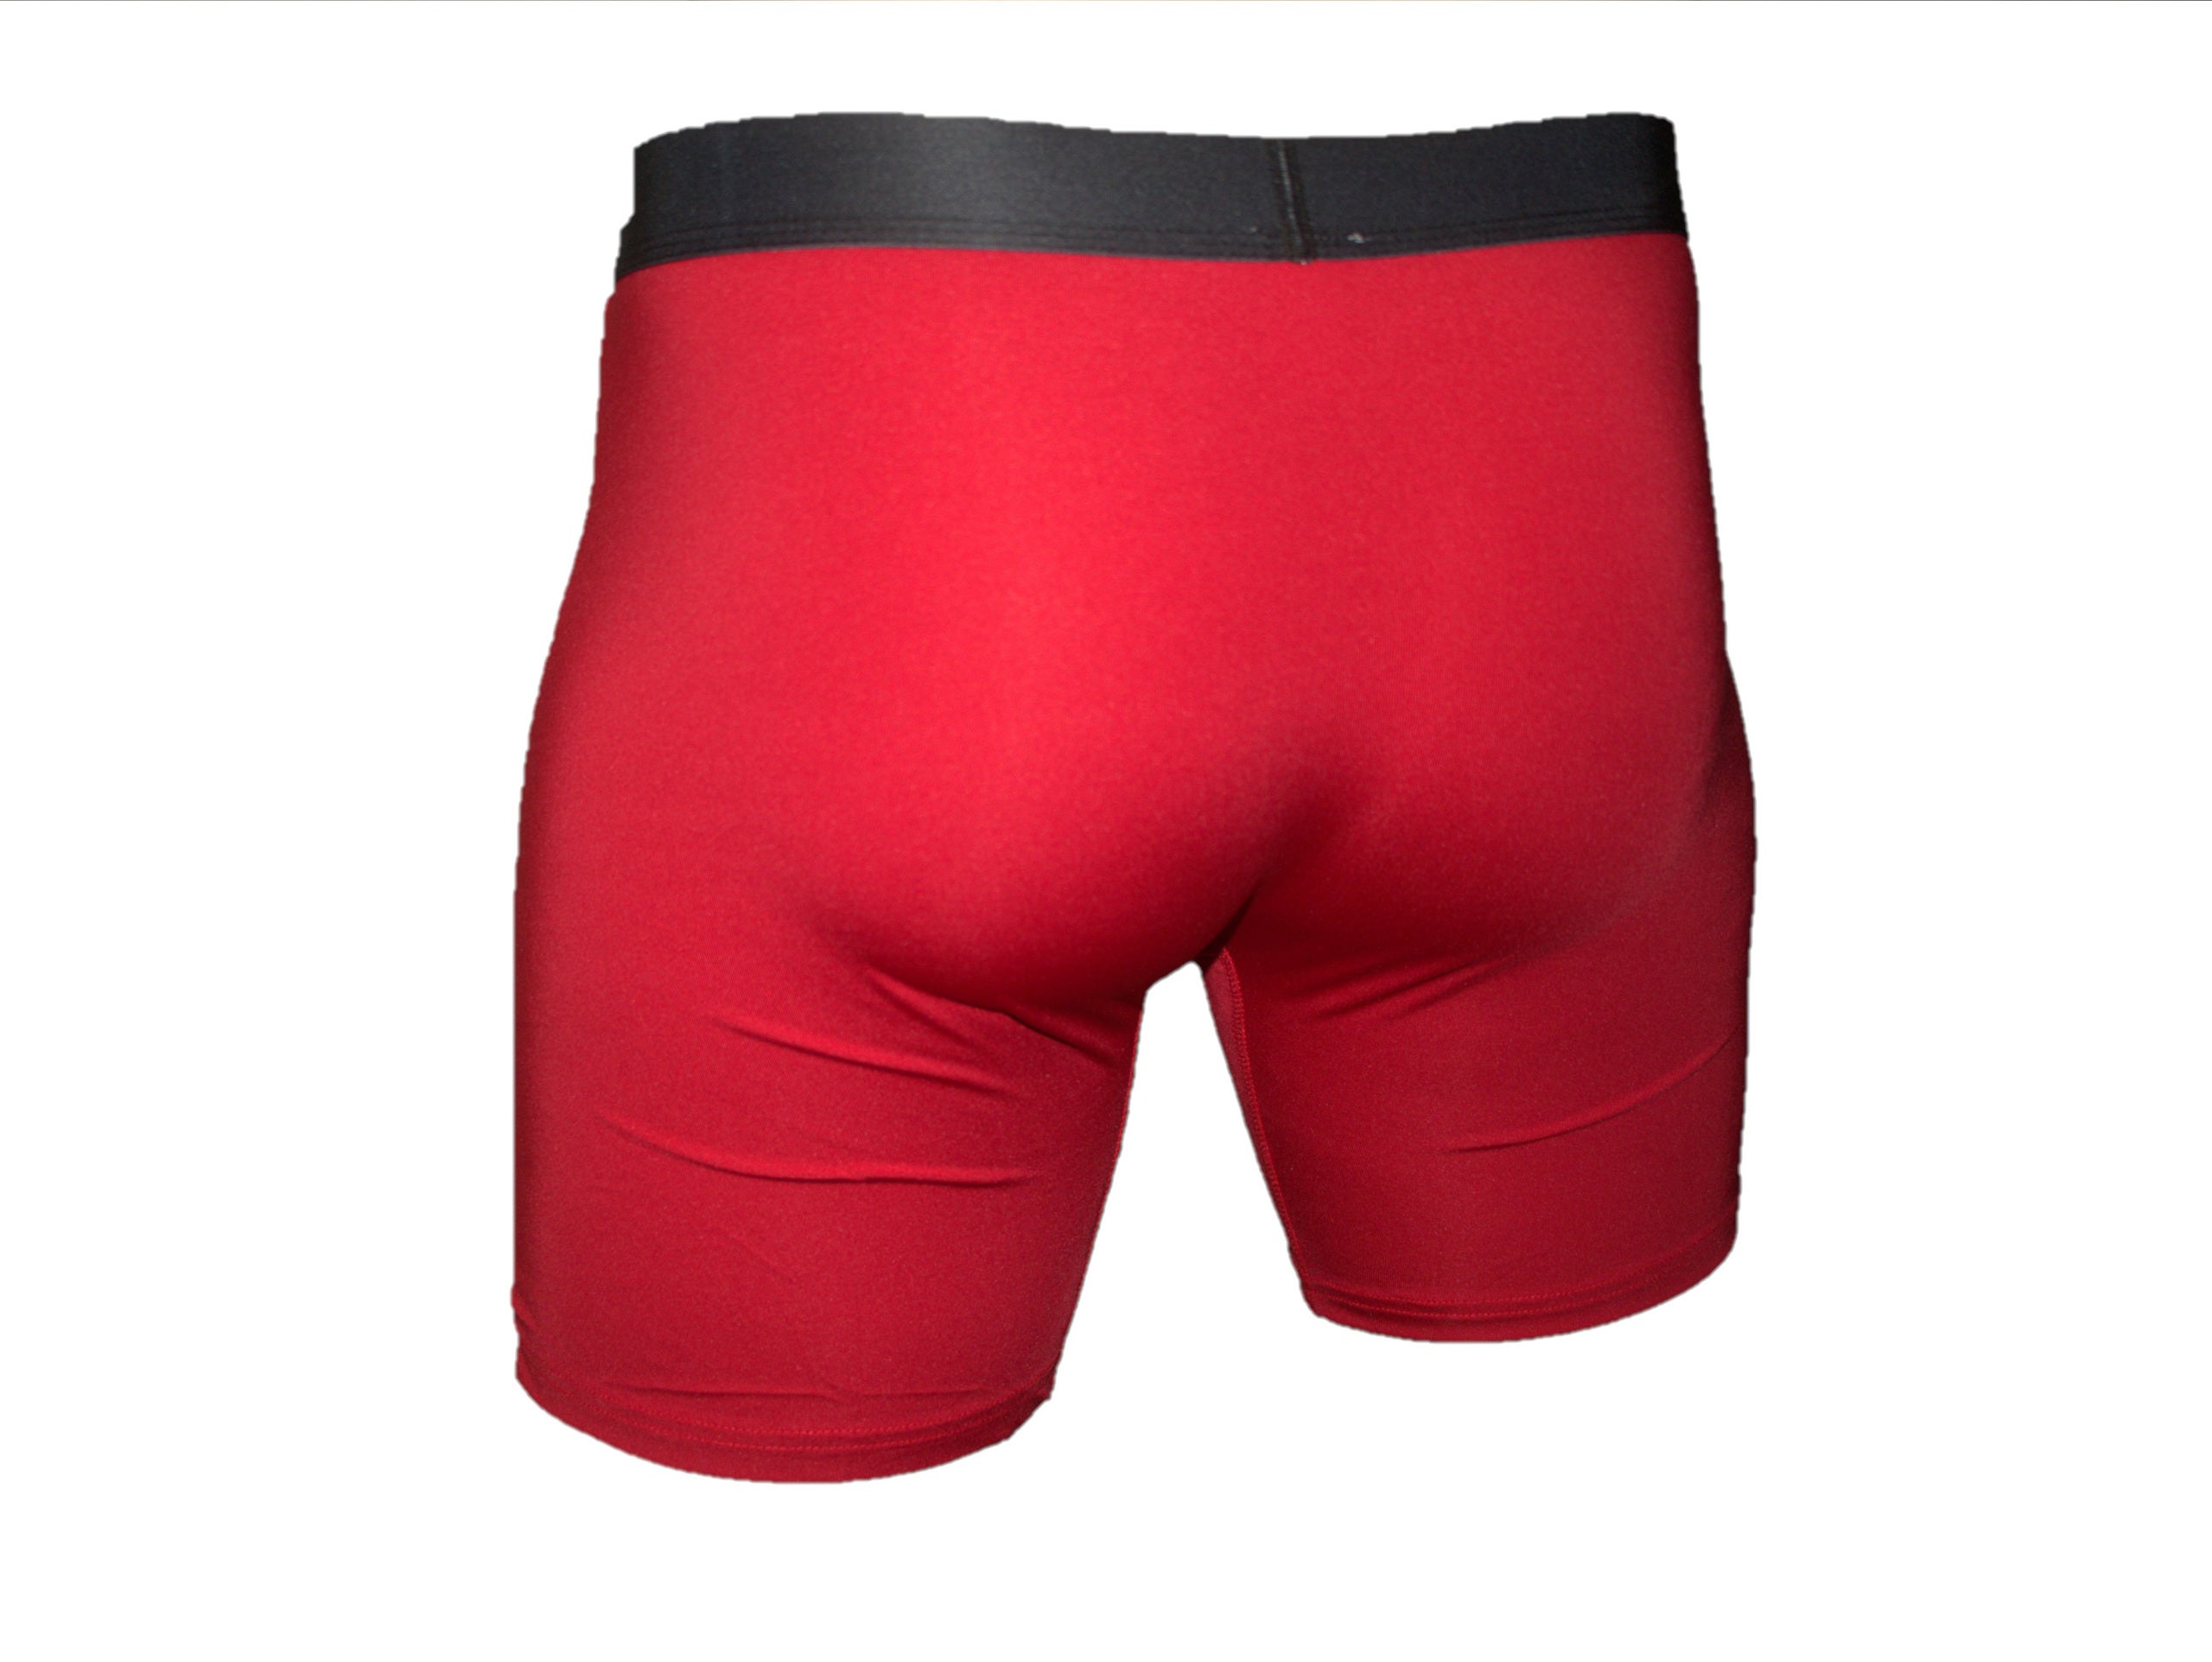 HKEJIAOI Long Leg Boxer Briefs for Men Men's Underwear Cotton Large Size  Men's Boxer Underpants Extra Long Sport Solid Color 